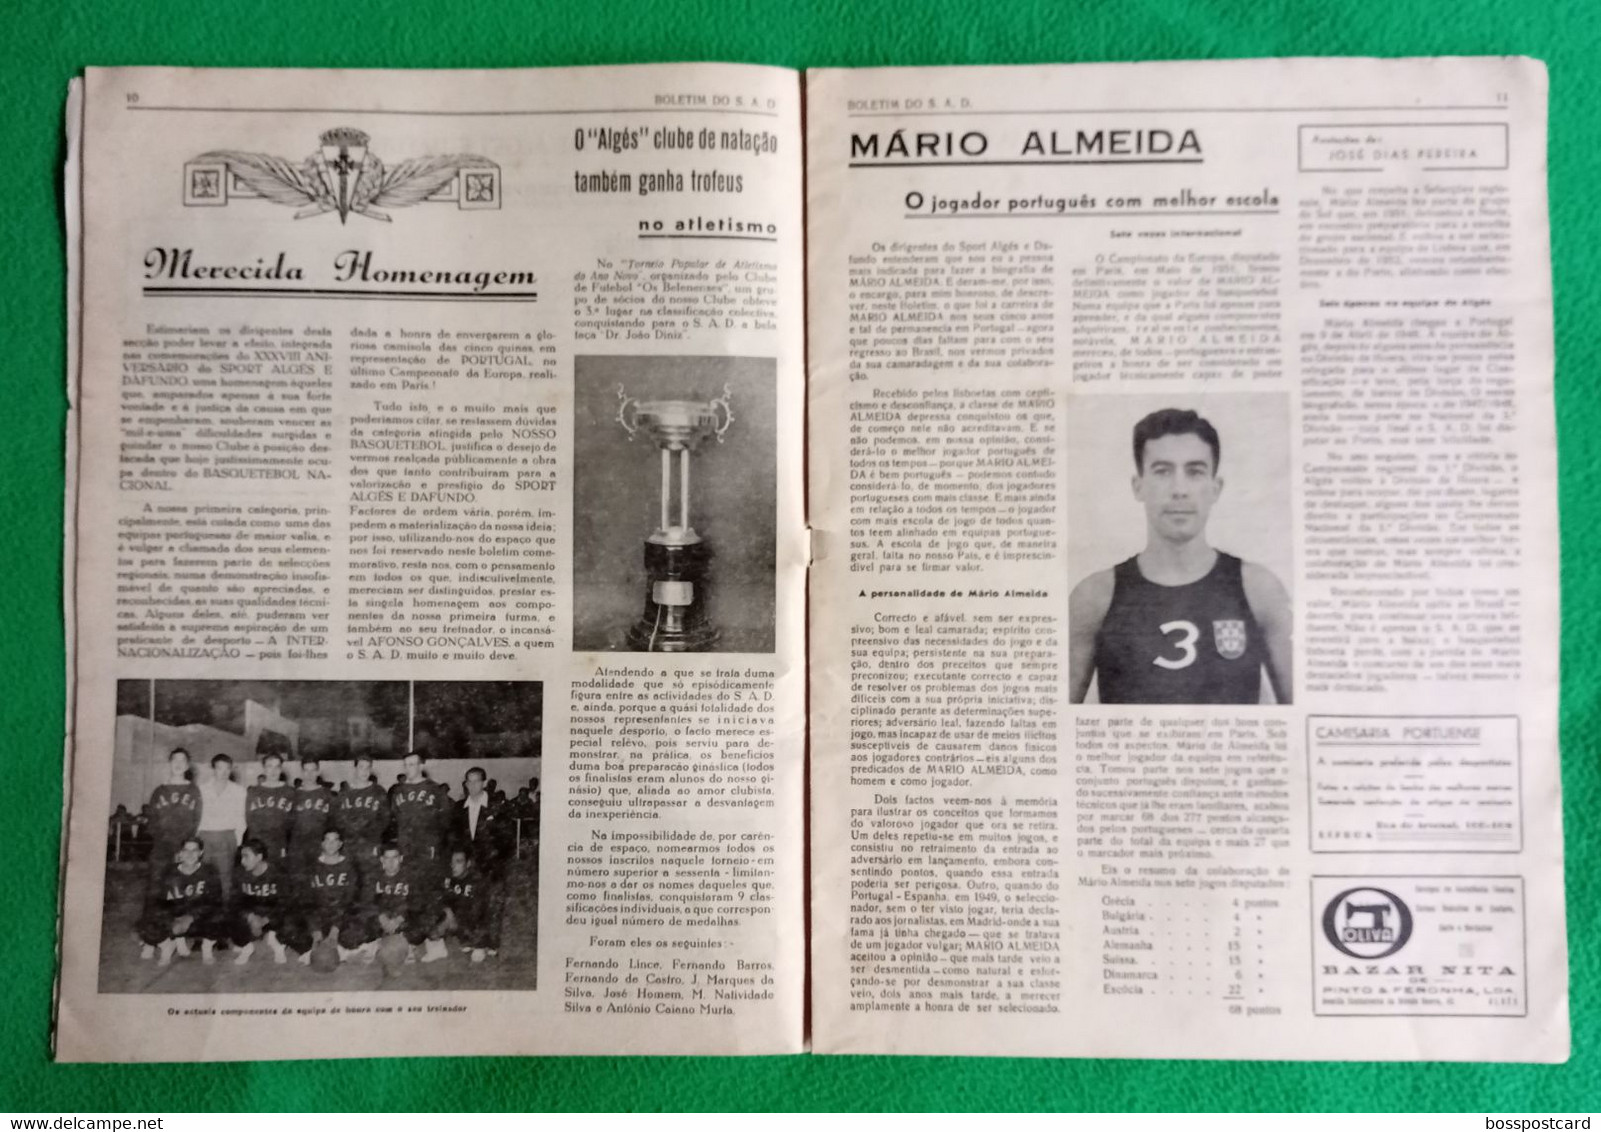 Algés - Sport Algés E Dafundo - Número Comemorativo Do XXXVIII Aniversário, 1953 - Publicidade - Portugal - Sports